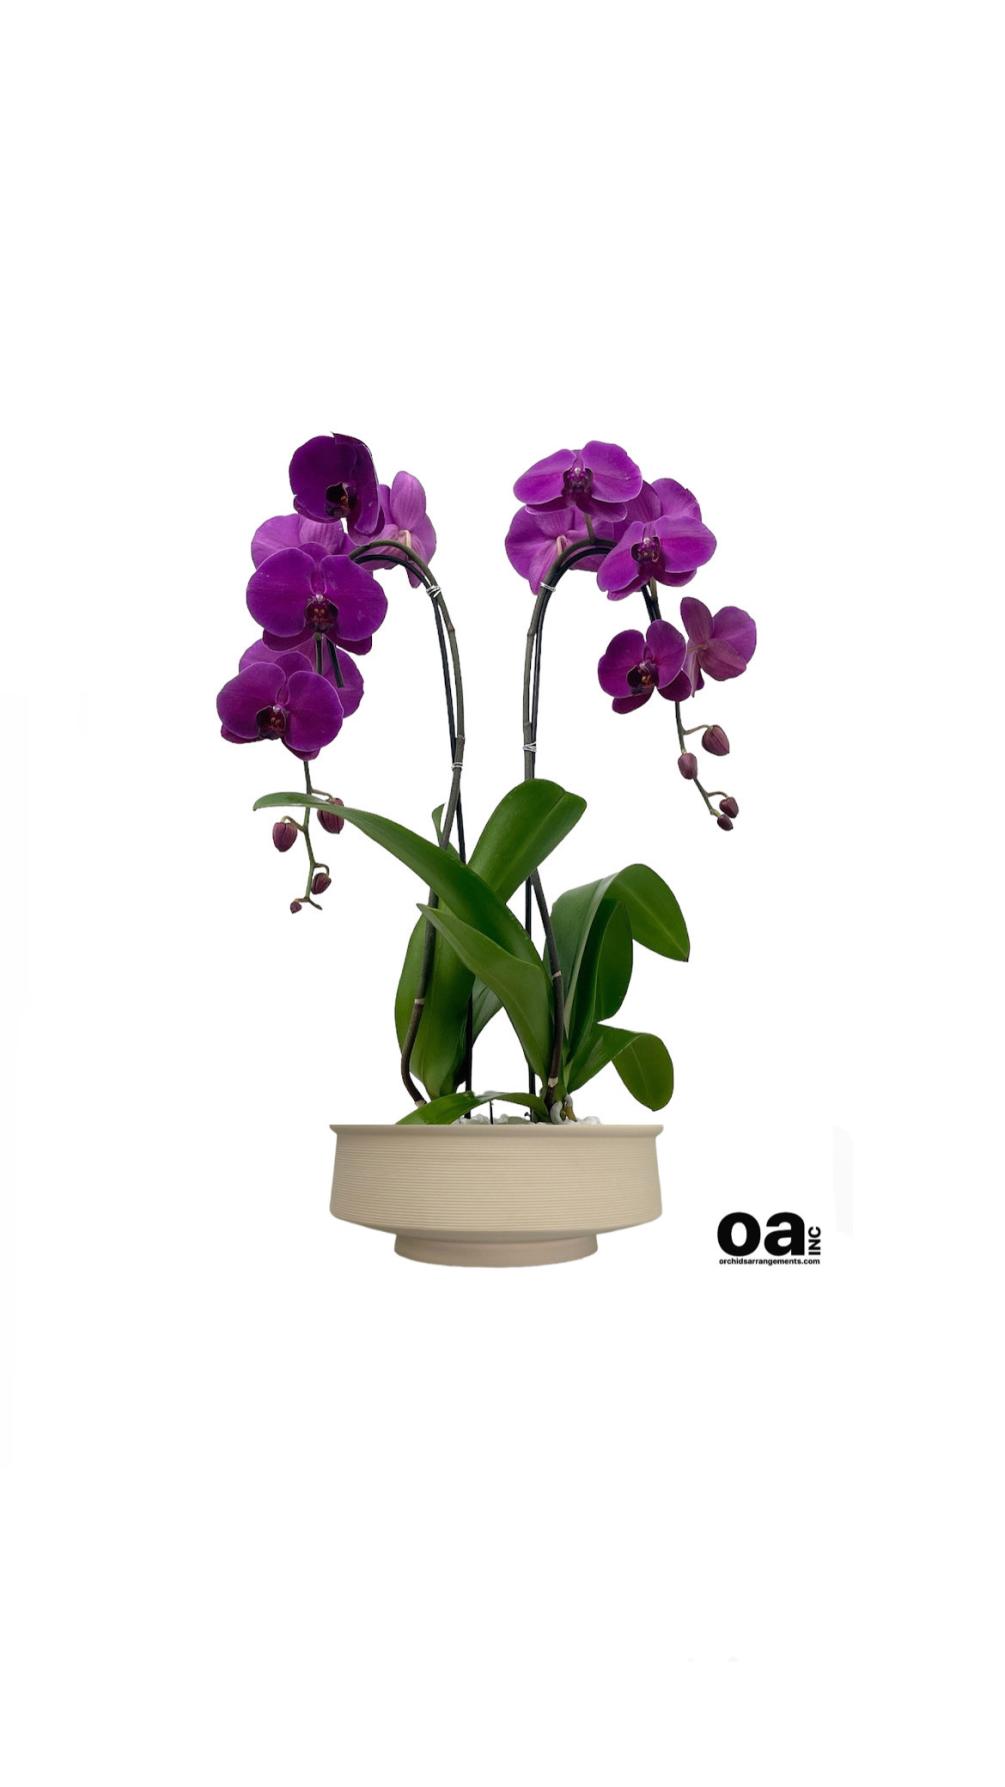 Orchids Coconut Grove floral
2 purple orchids flowers 11&quot; D x 6&quot; T